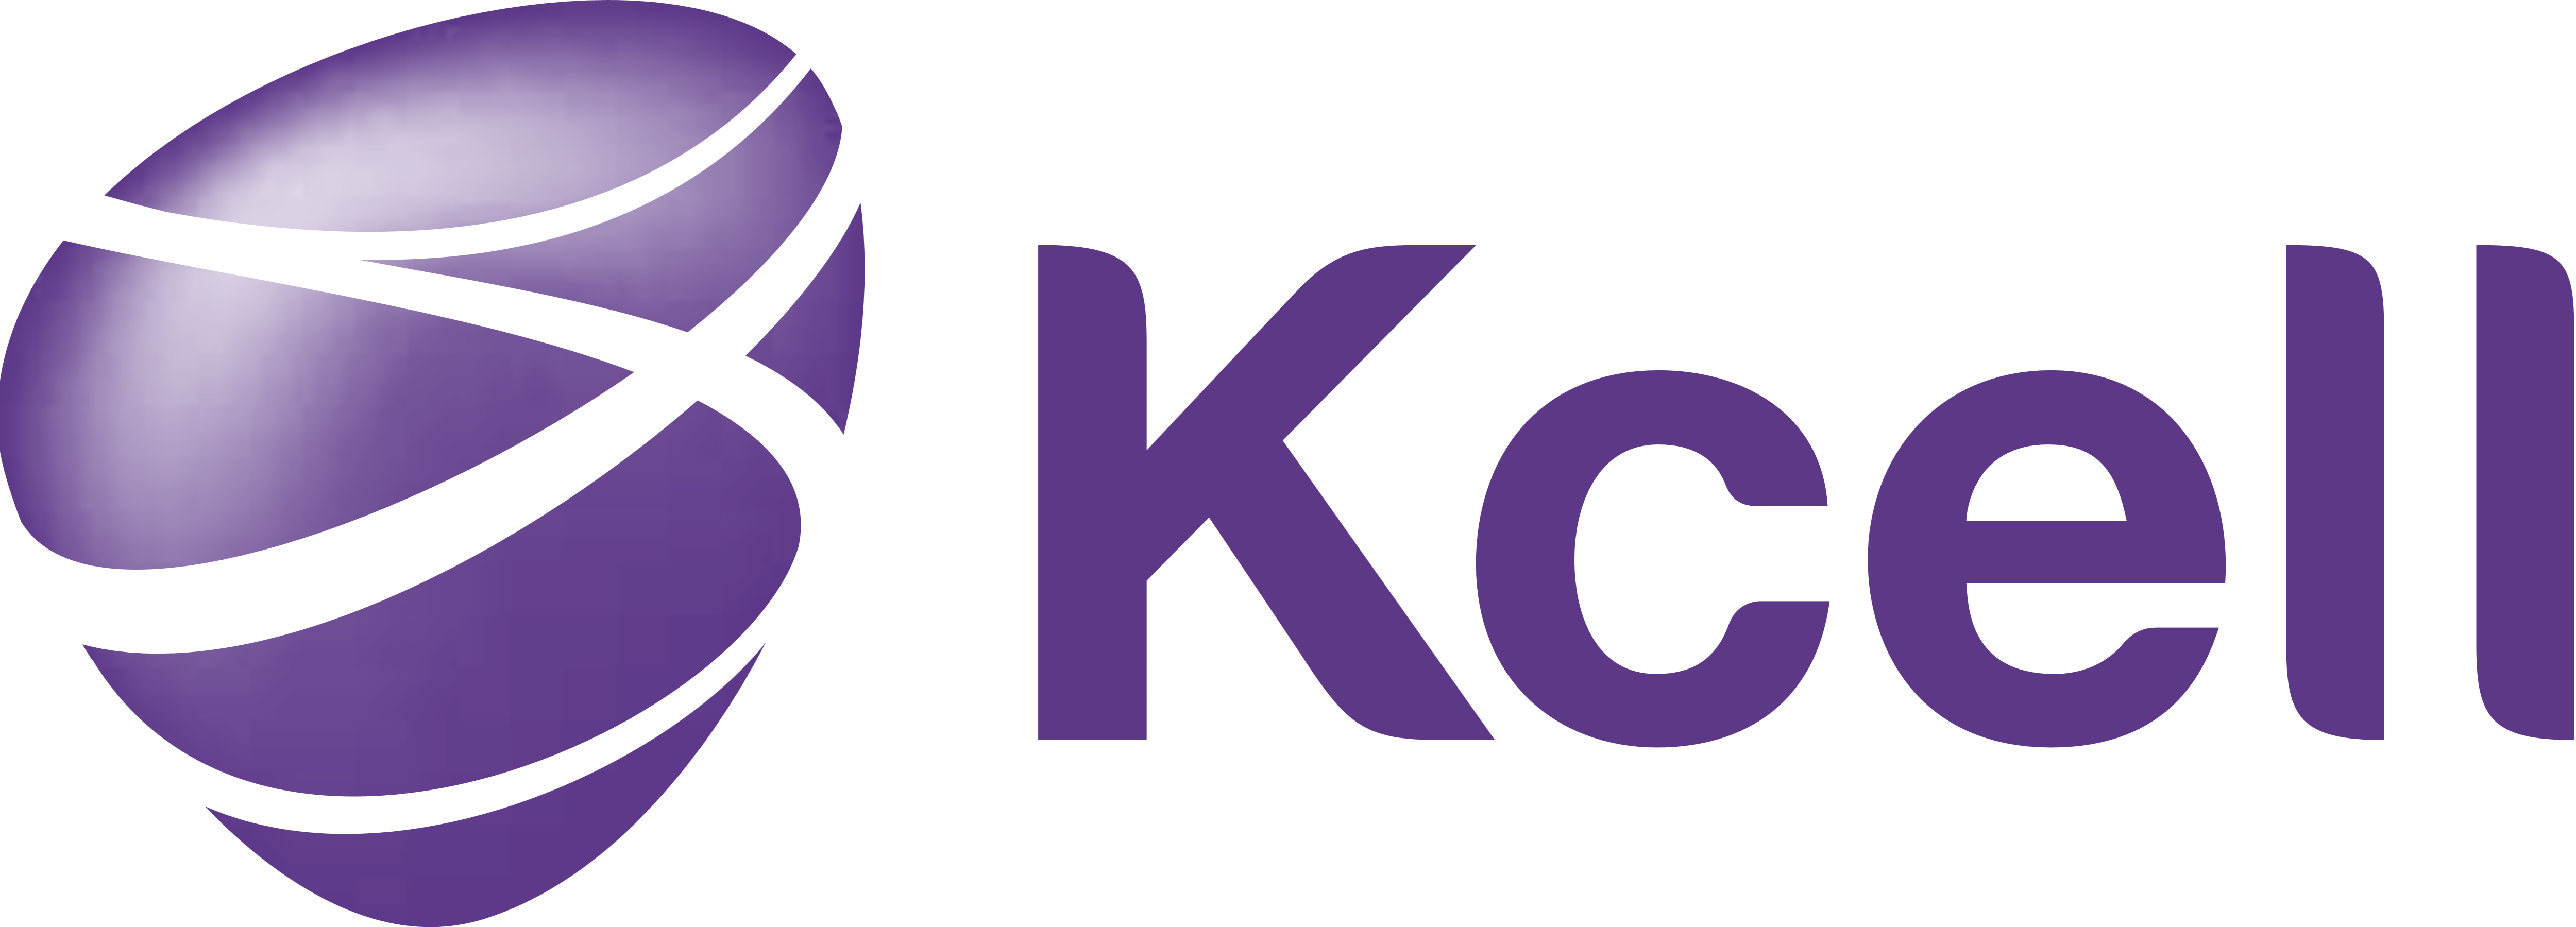 Kcell_logo